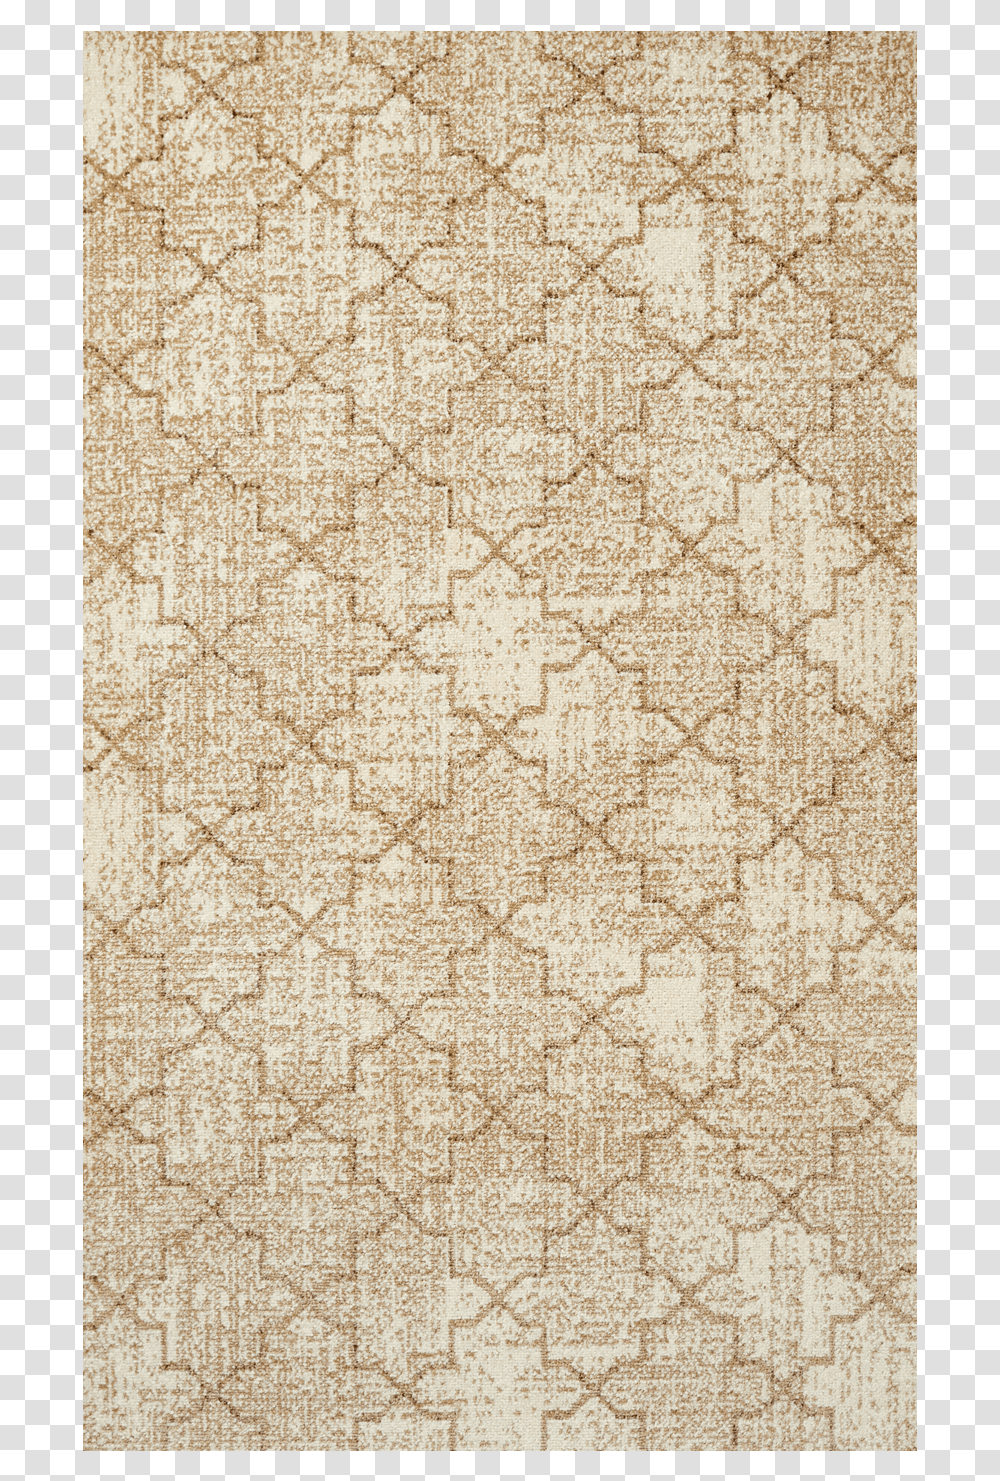 Tile, Rug, Lace, Texture Transparent Png